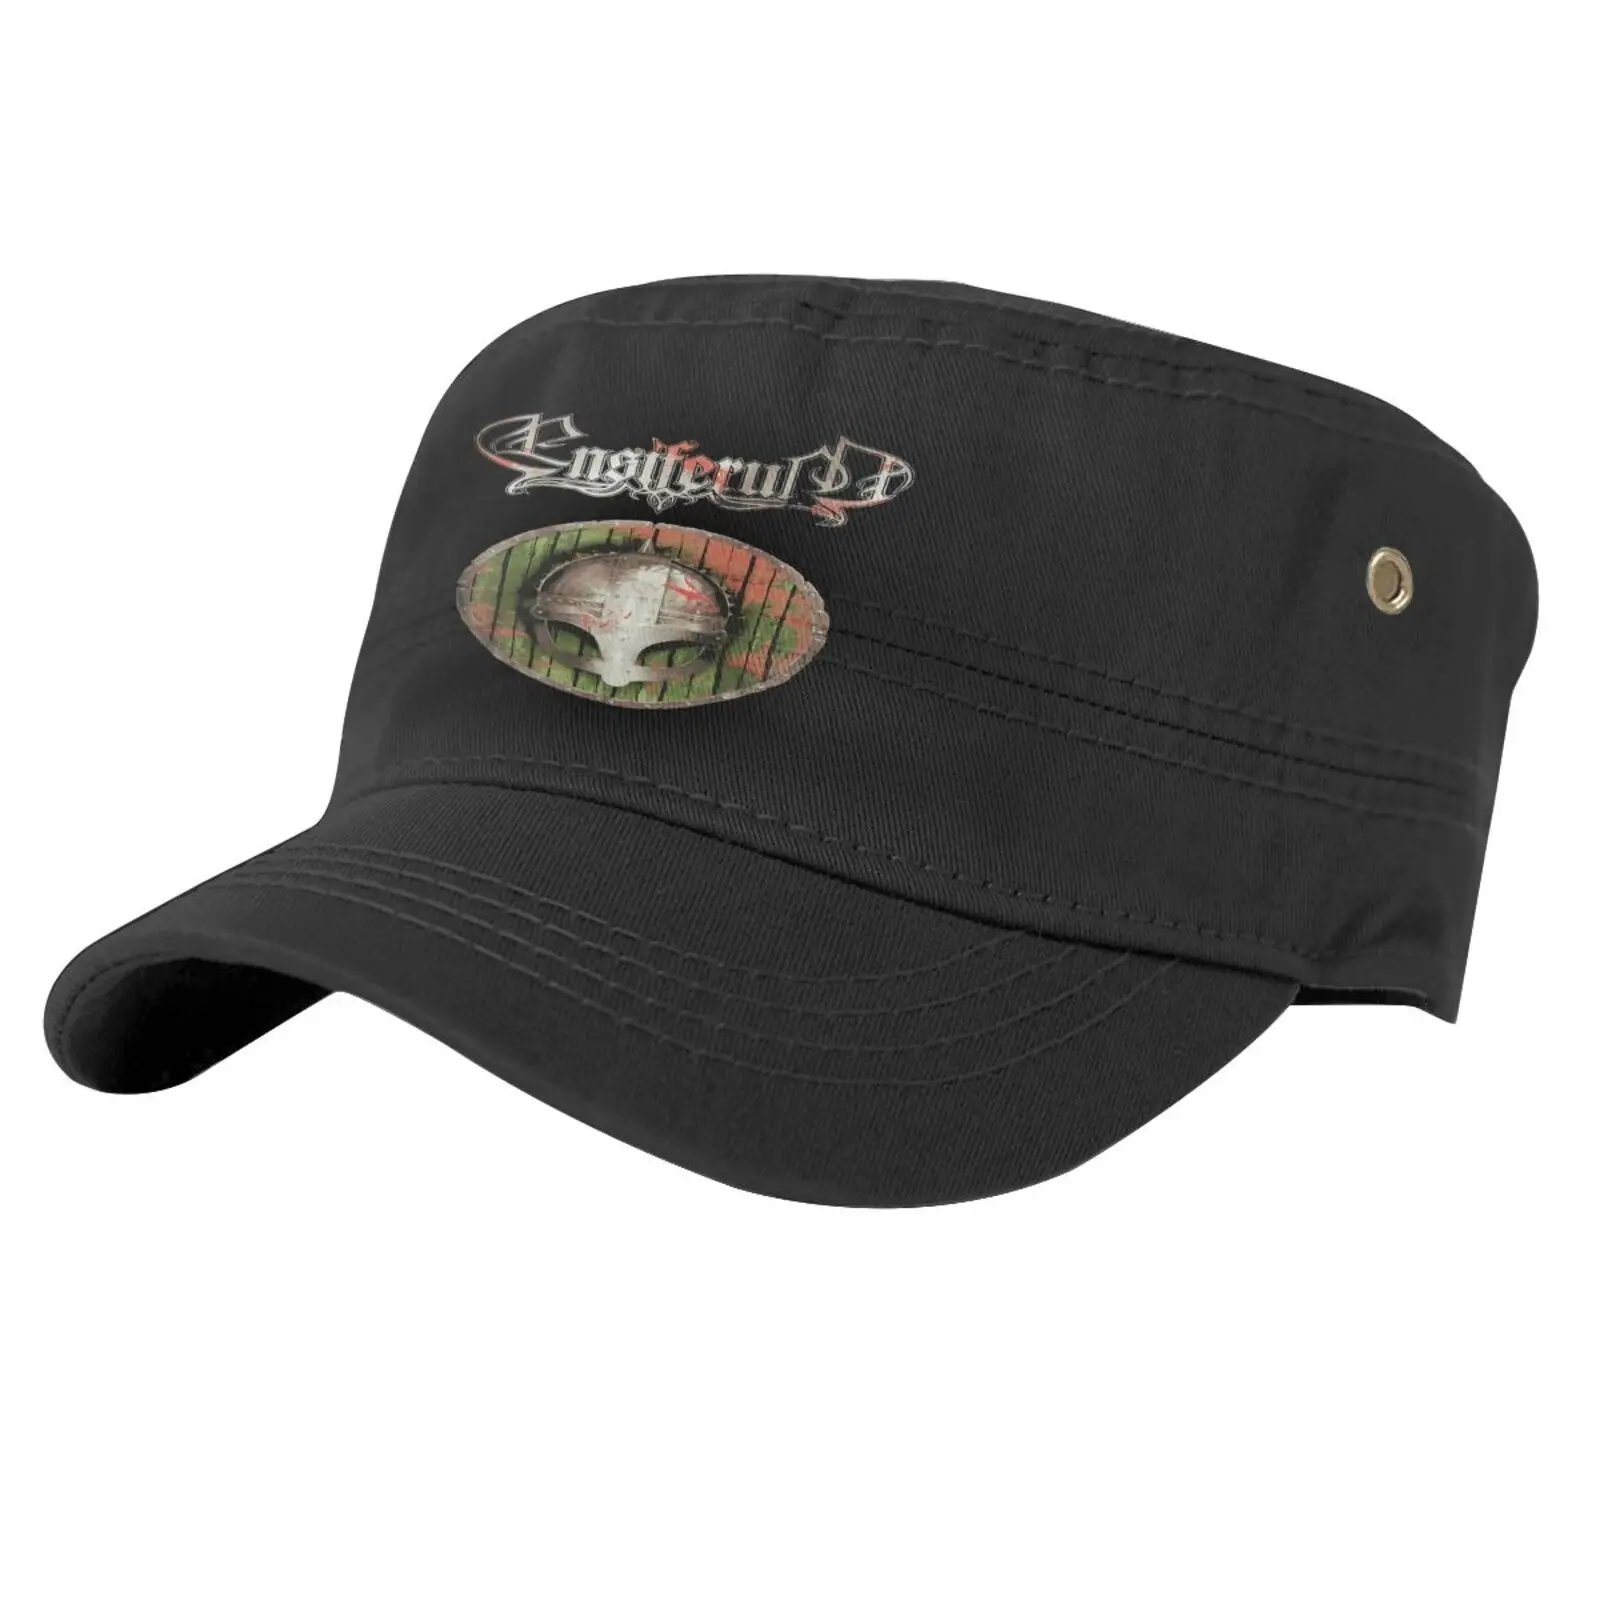 

Bnwt Ensiferum кровь-это цена, кепка приключения времени, берет, женская шляпа, женская шляпа, бейсболка, Пляжные шапки для мужчин, кепка s